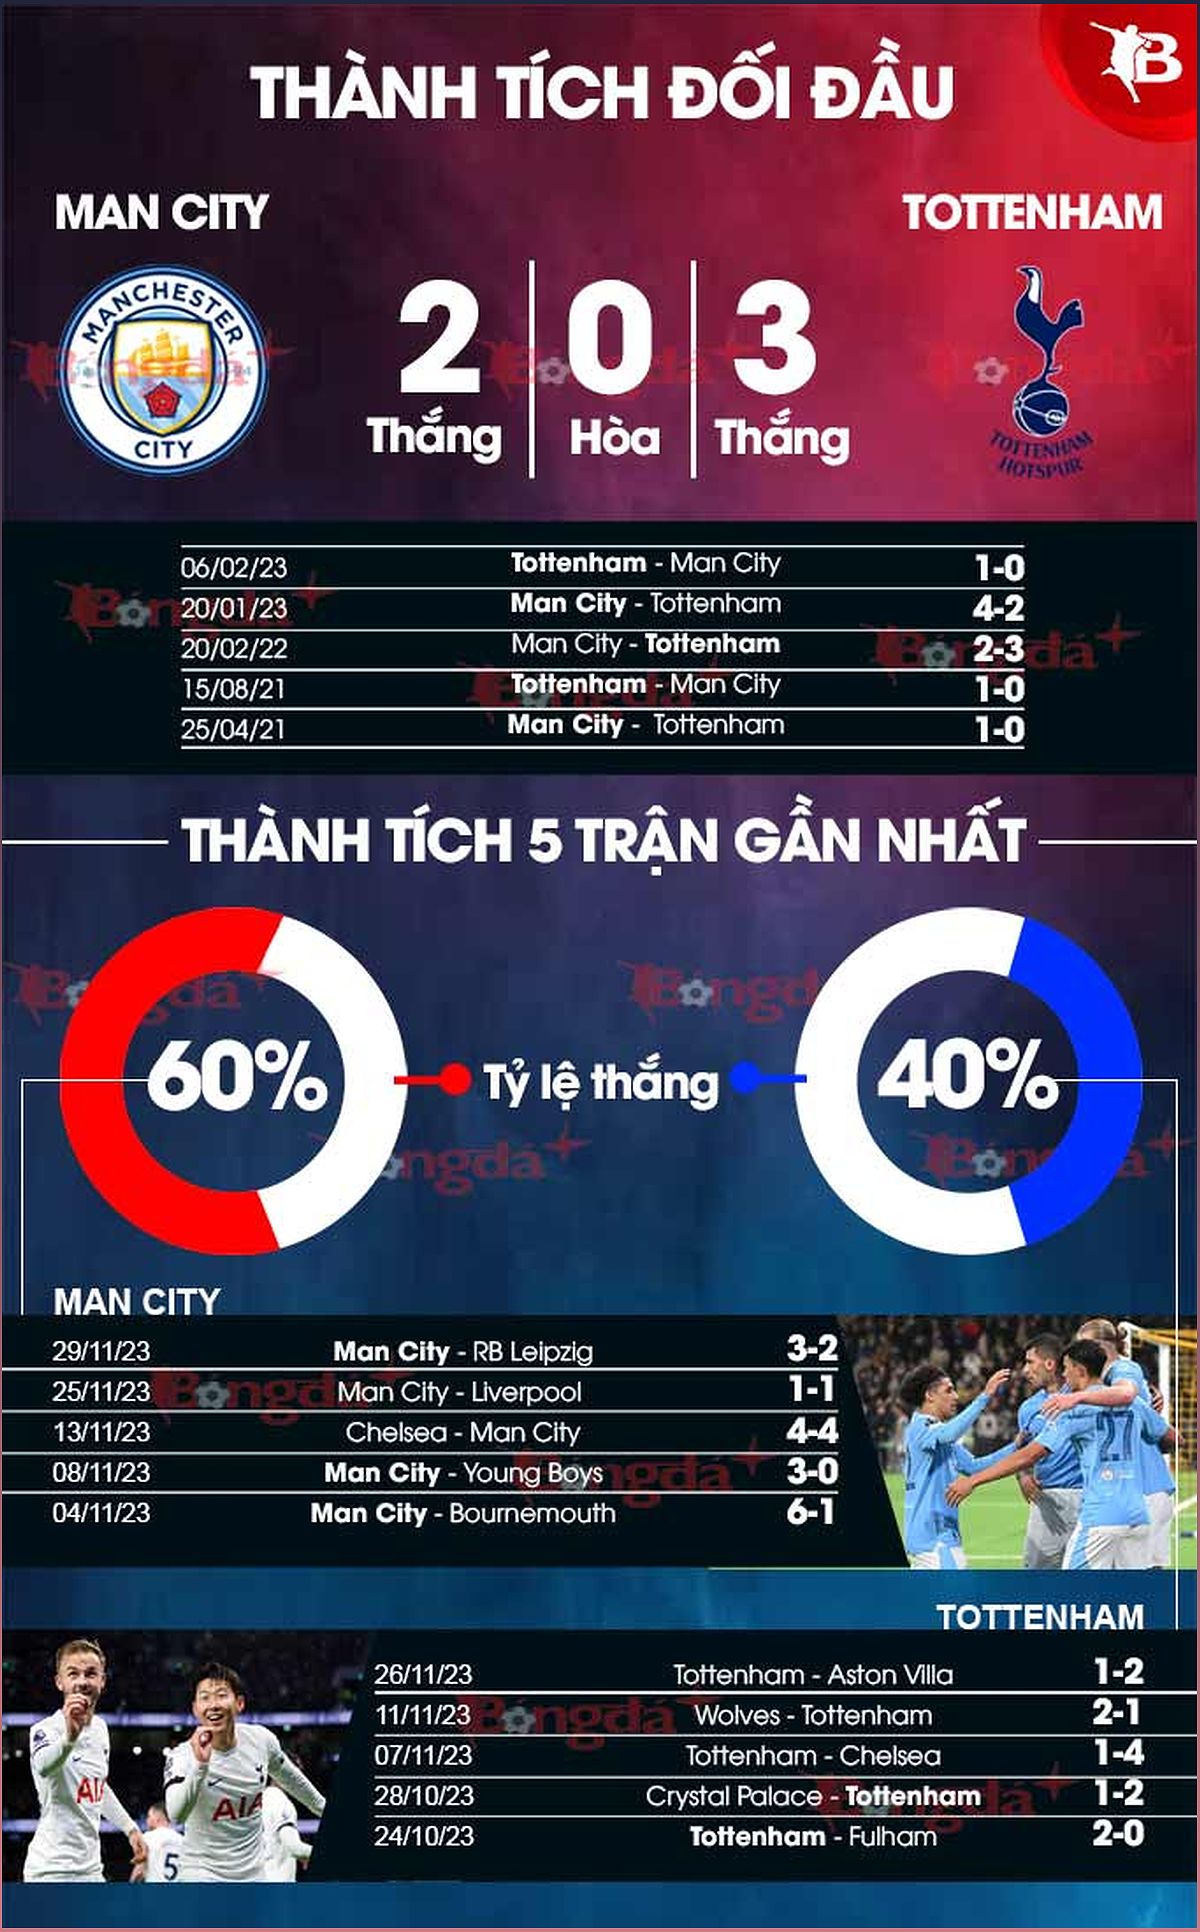 Nhận định trận đấu Man City vs Tottenham: Phân tích phong độ, lực lượng và dự đoán tỉ số - 344167424